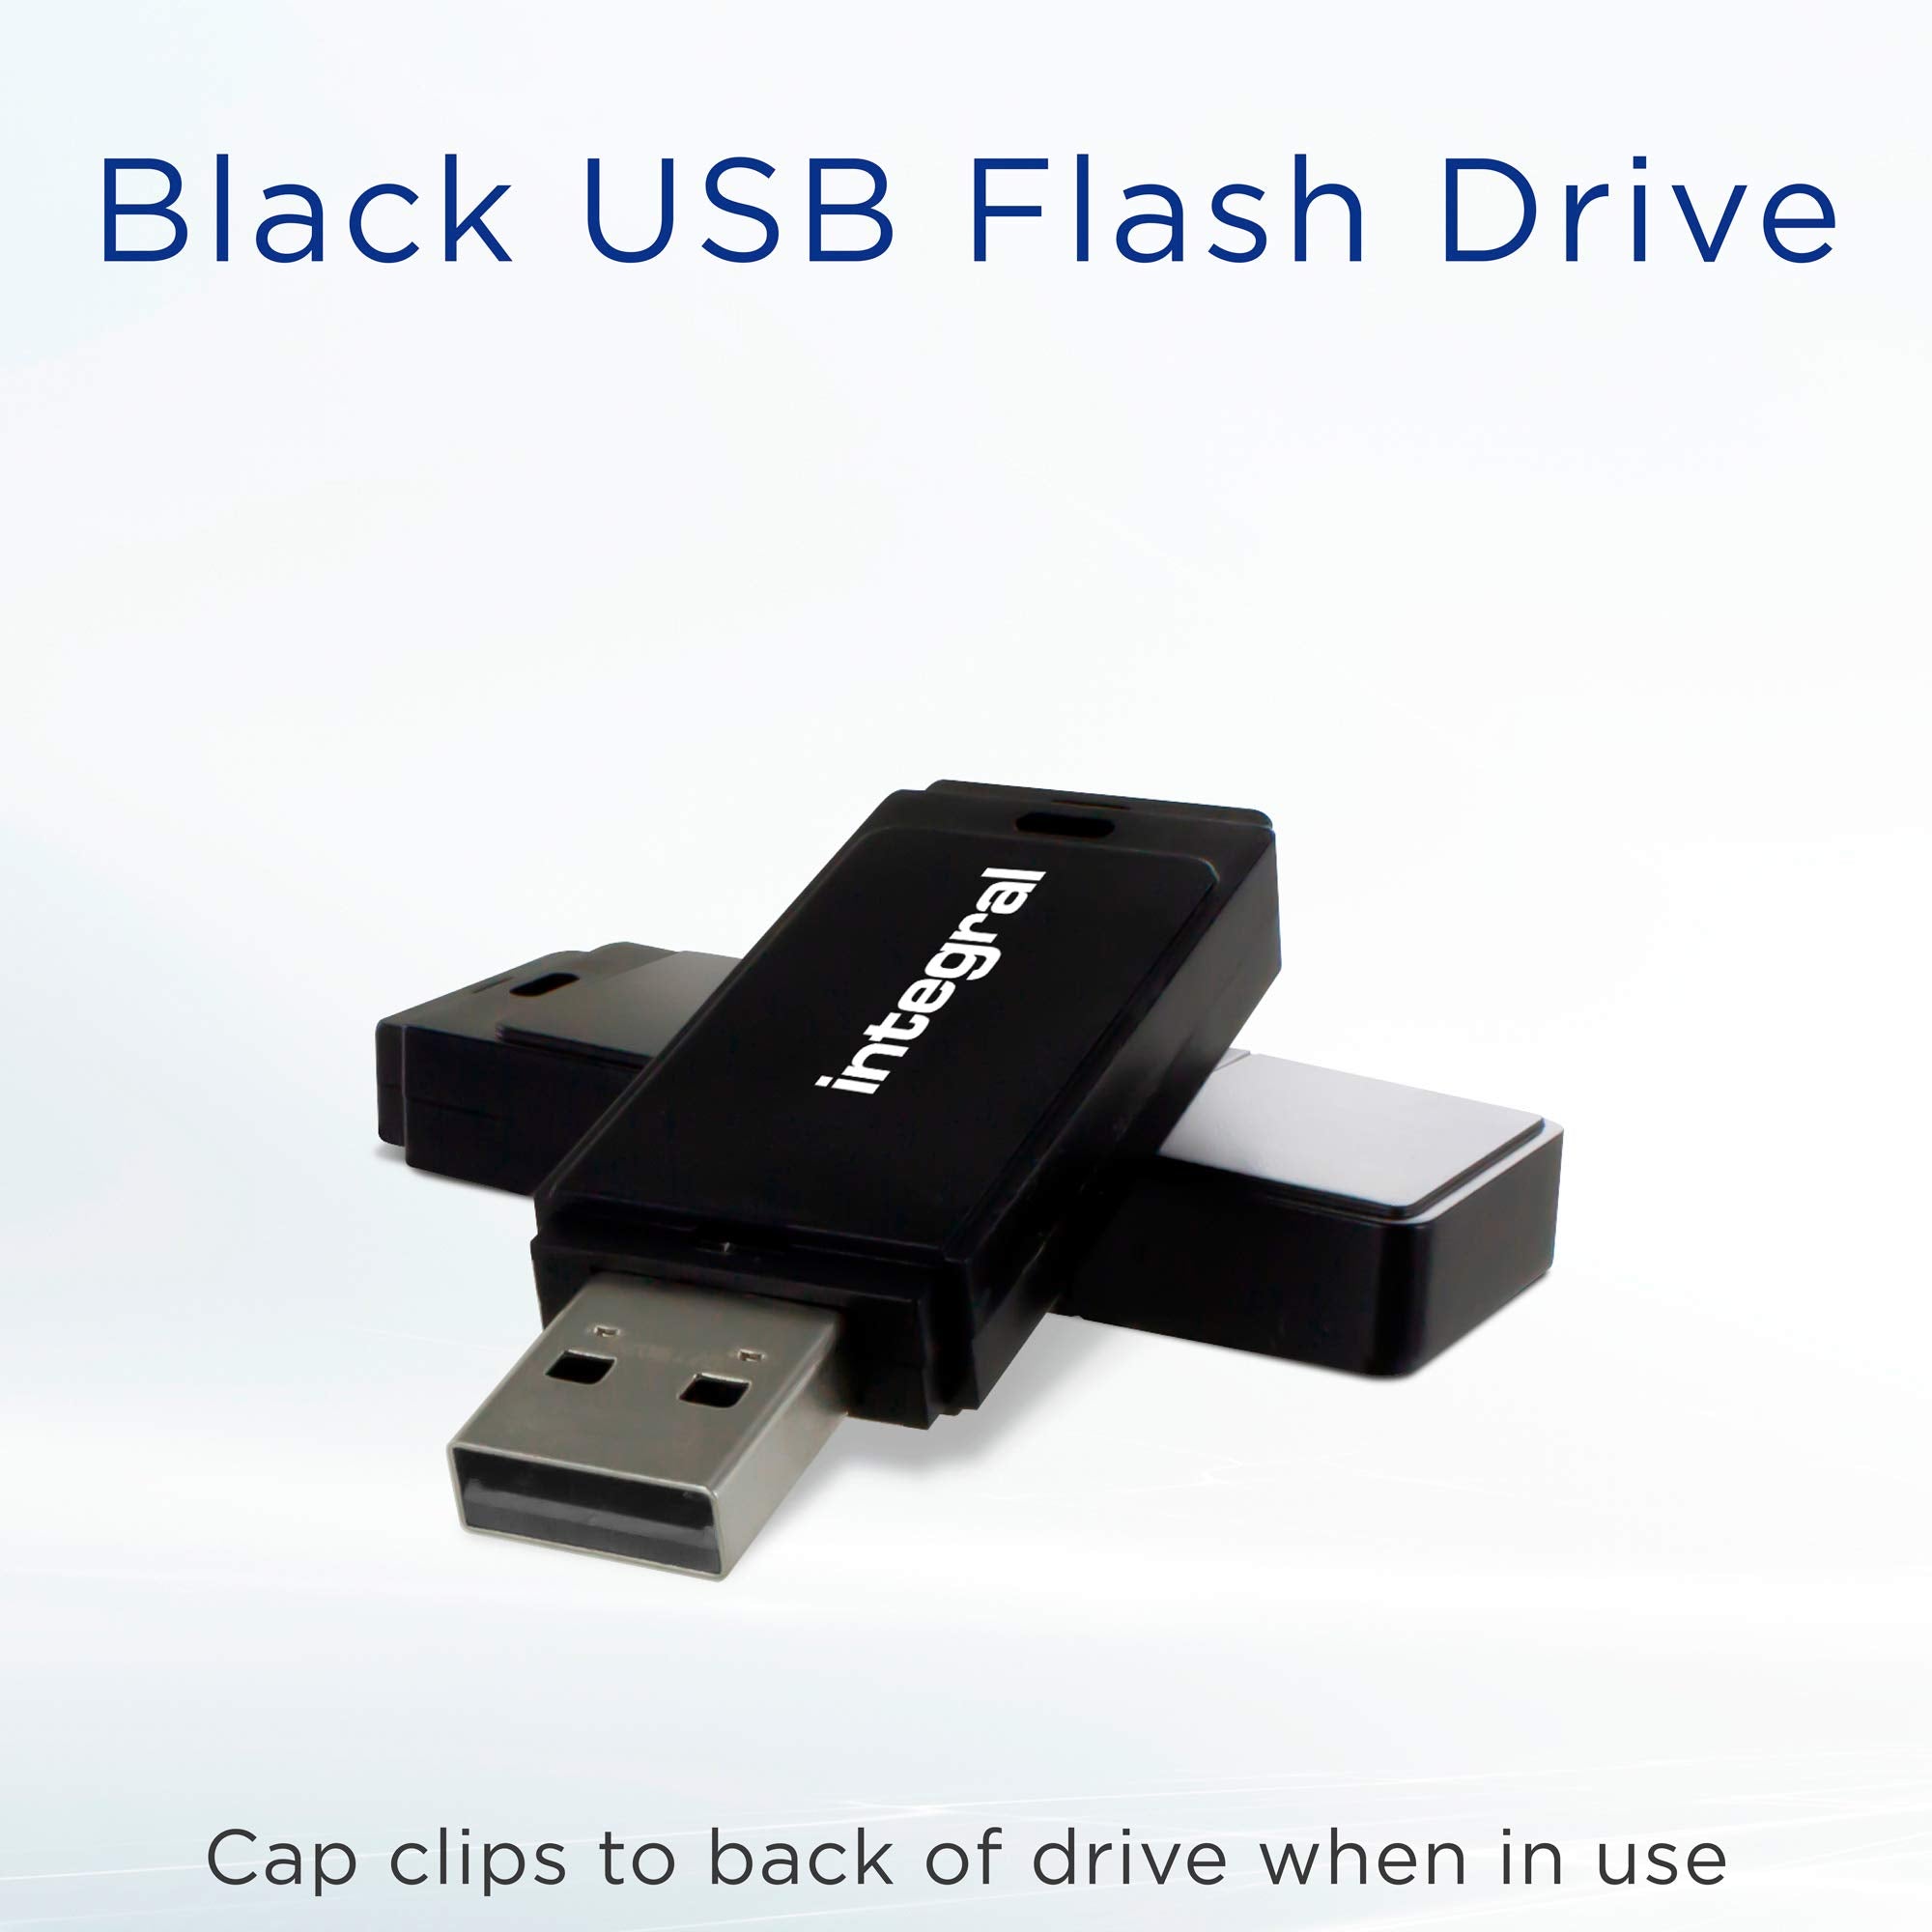 Integral INFD64GBBLK 64GB USB Memory 2.0 Flash Drive